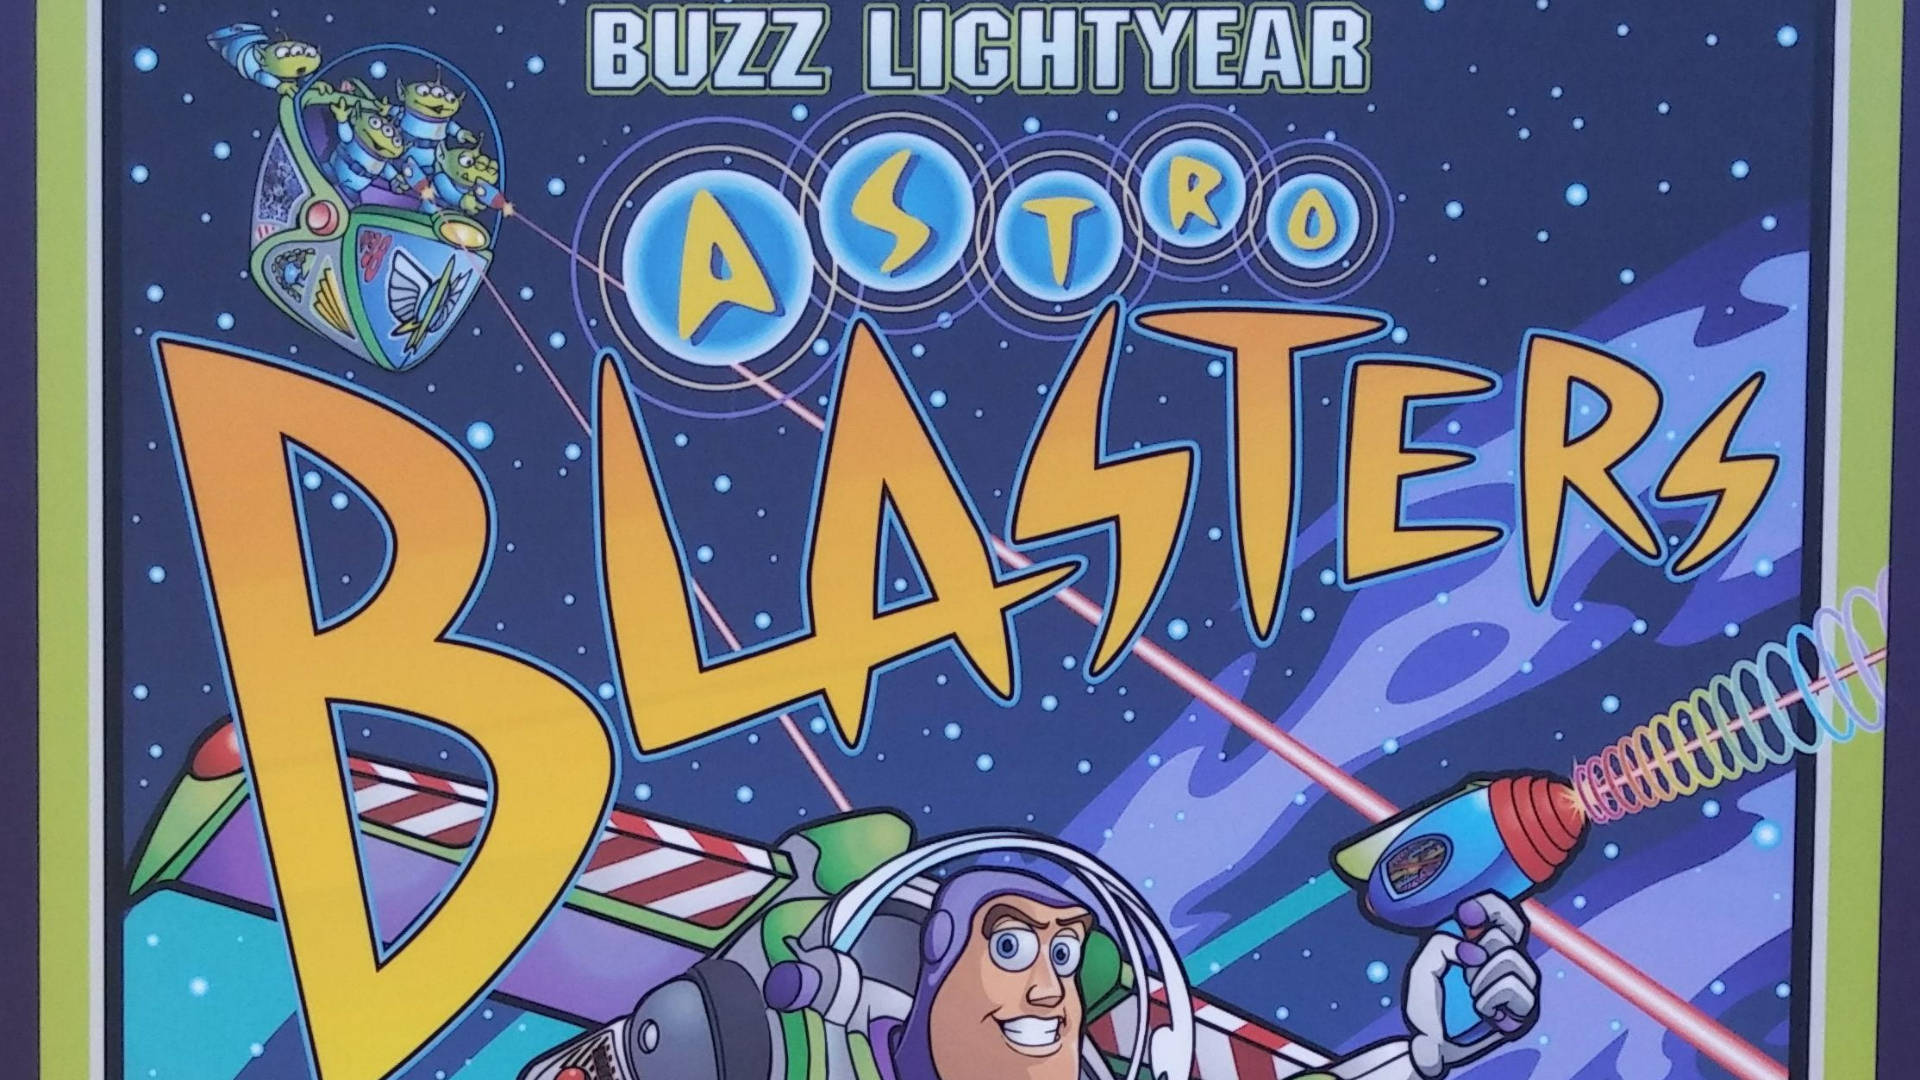 Buzzlightyear Von Der Star Command Astro Blasters Wallpaper